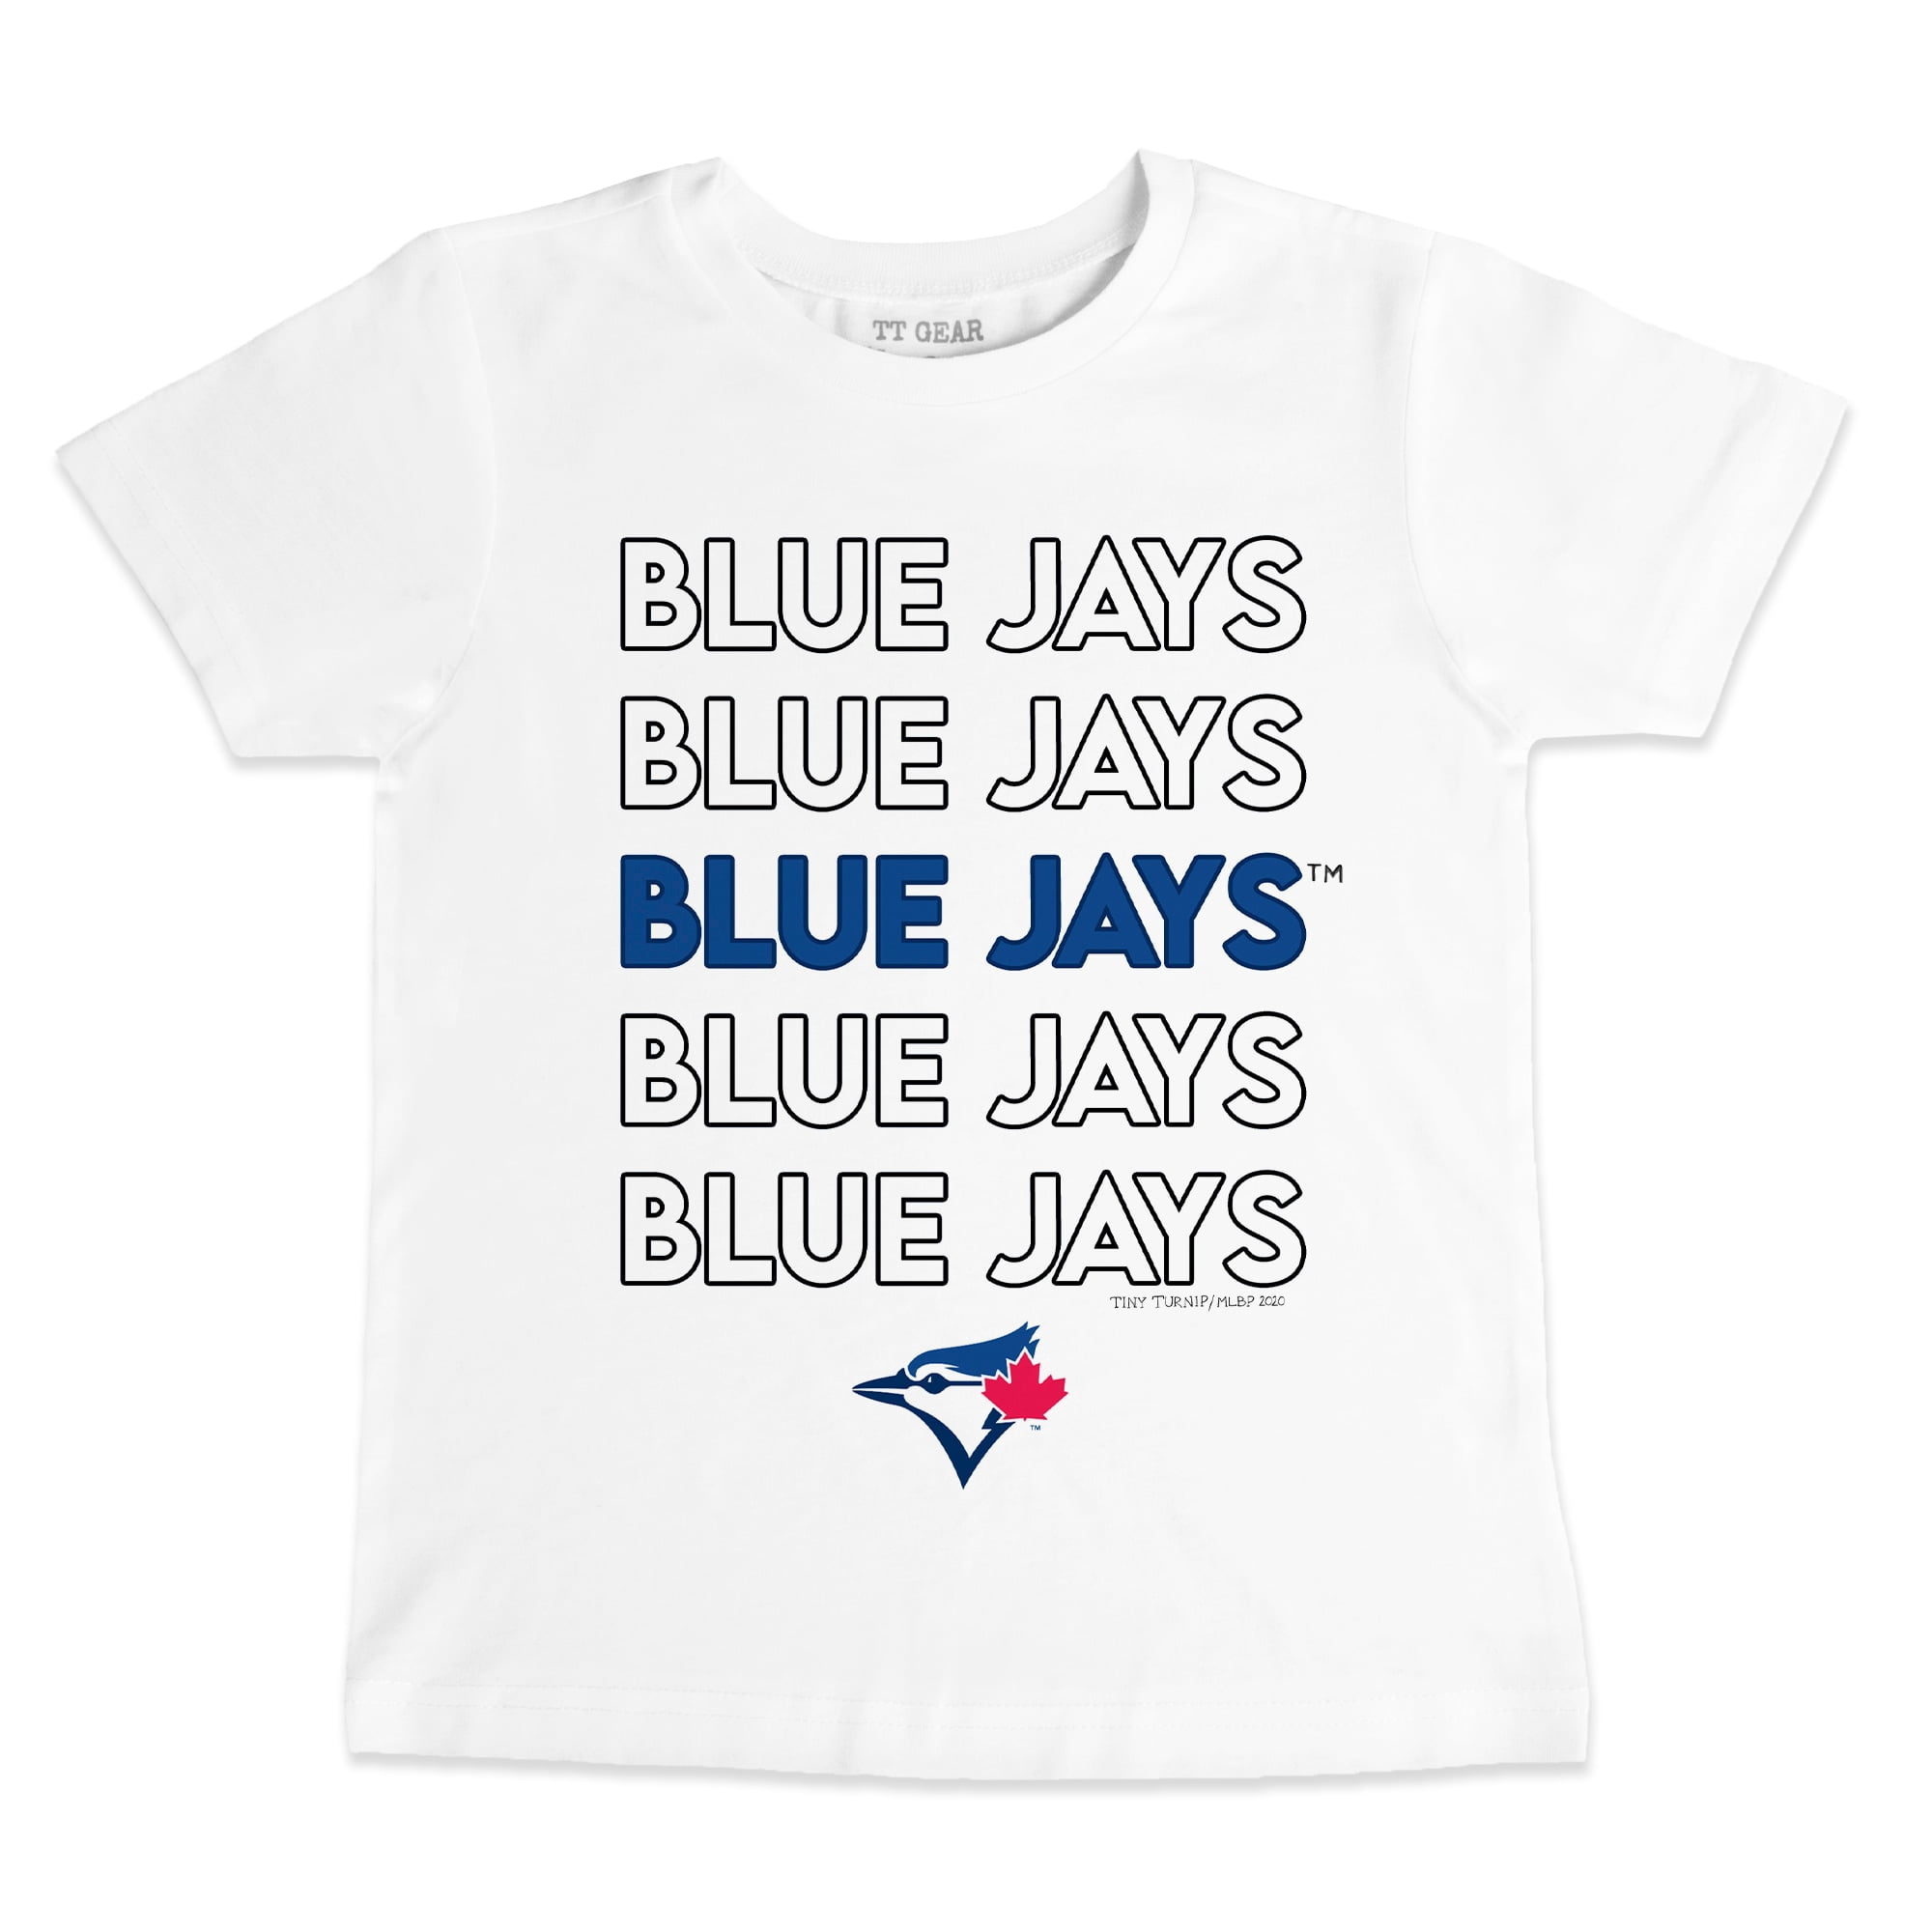 MLB Toronto Blue Jays Youth Kids' Short Sleeve T-Shirt, Blue, Assorted Sizes